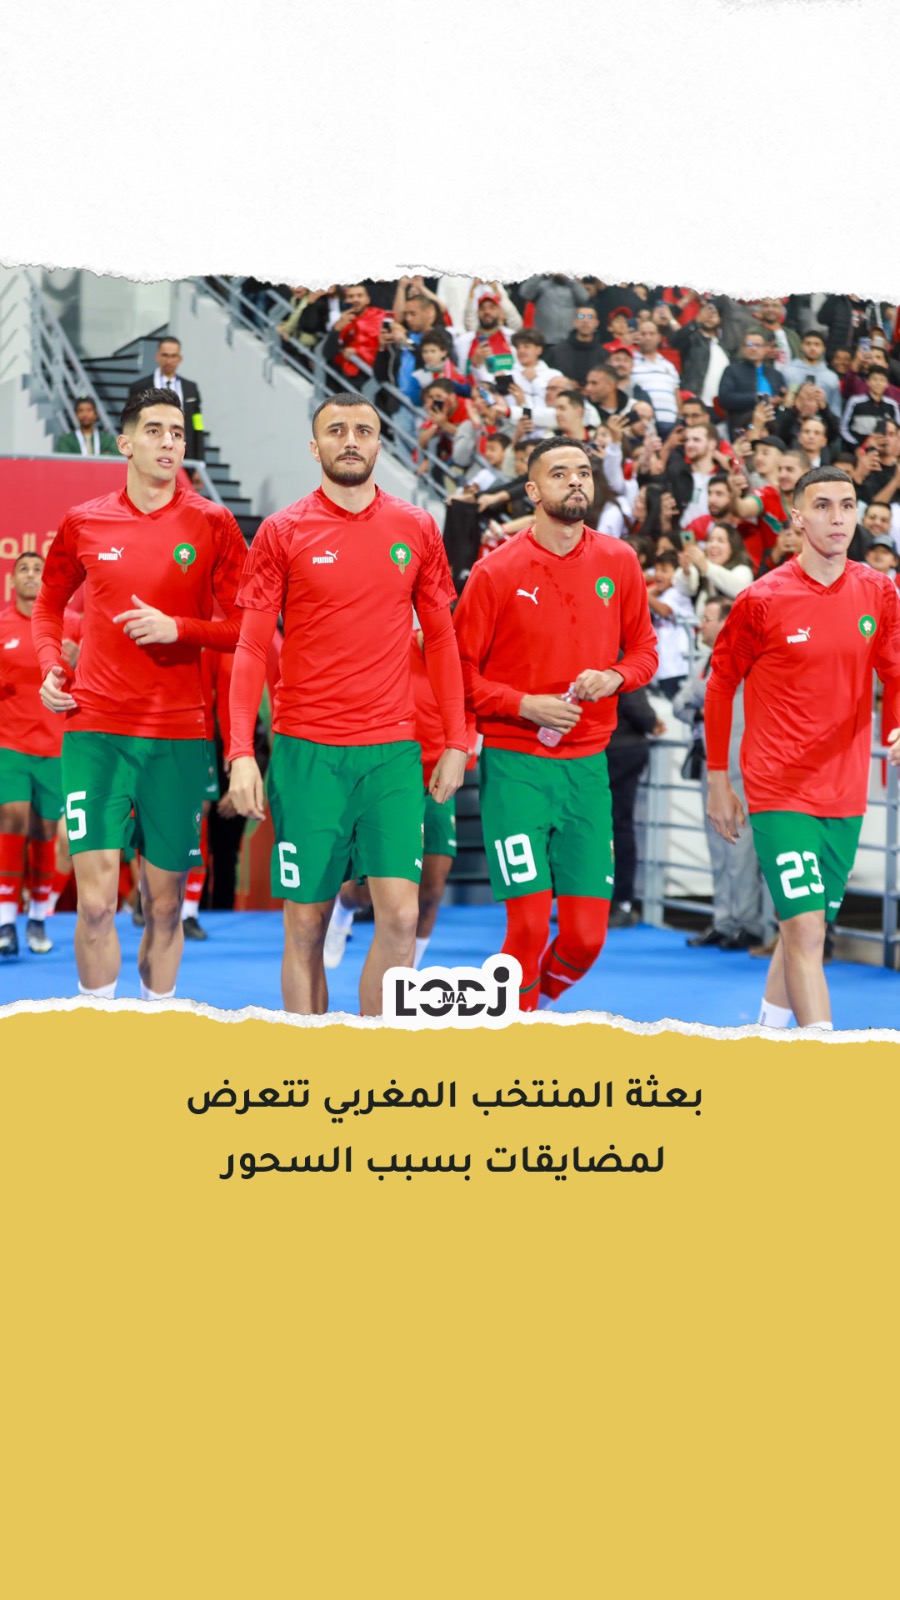 بعثة المنتخب المغربي تتعرض لمضايقات بسبب وجبة السحور